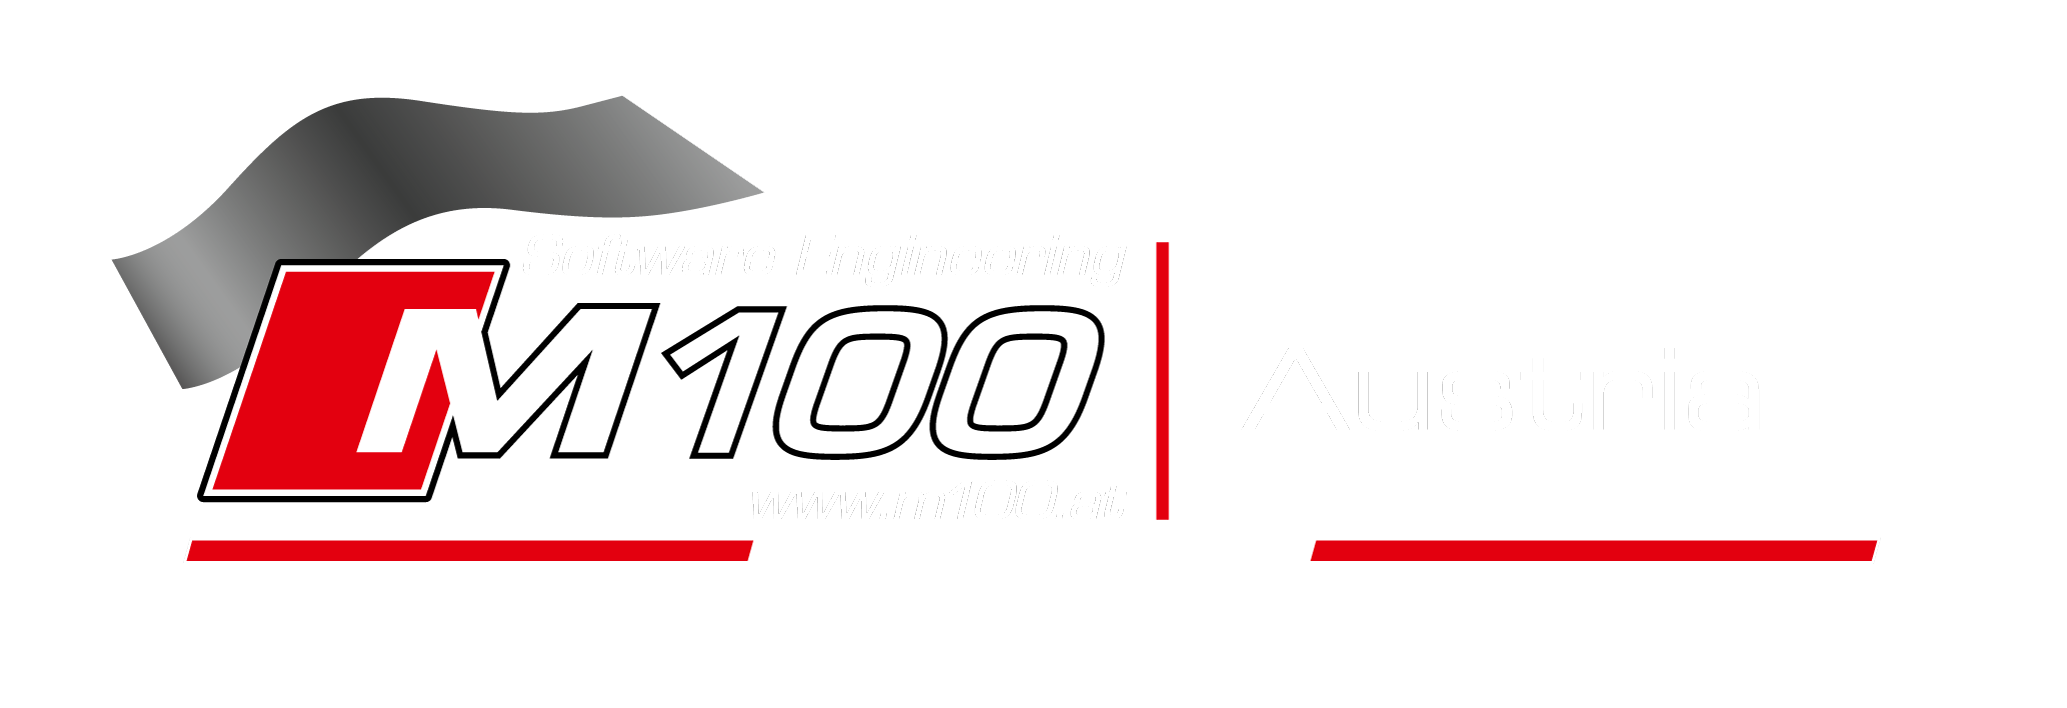 m100-austria